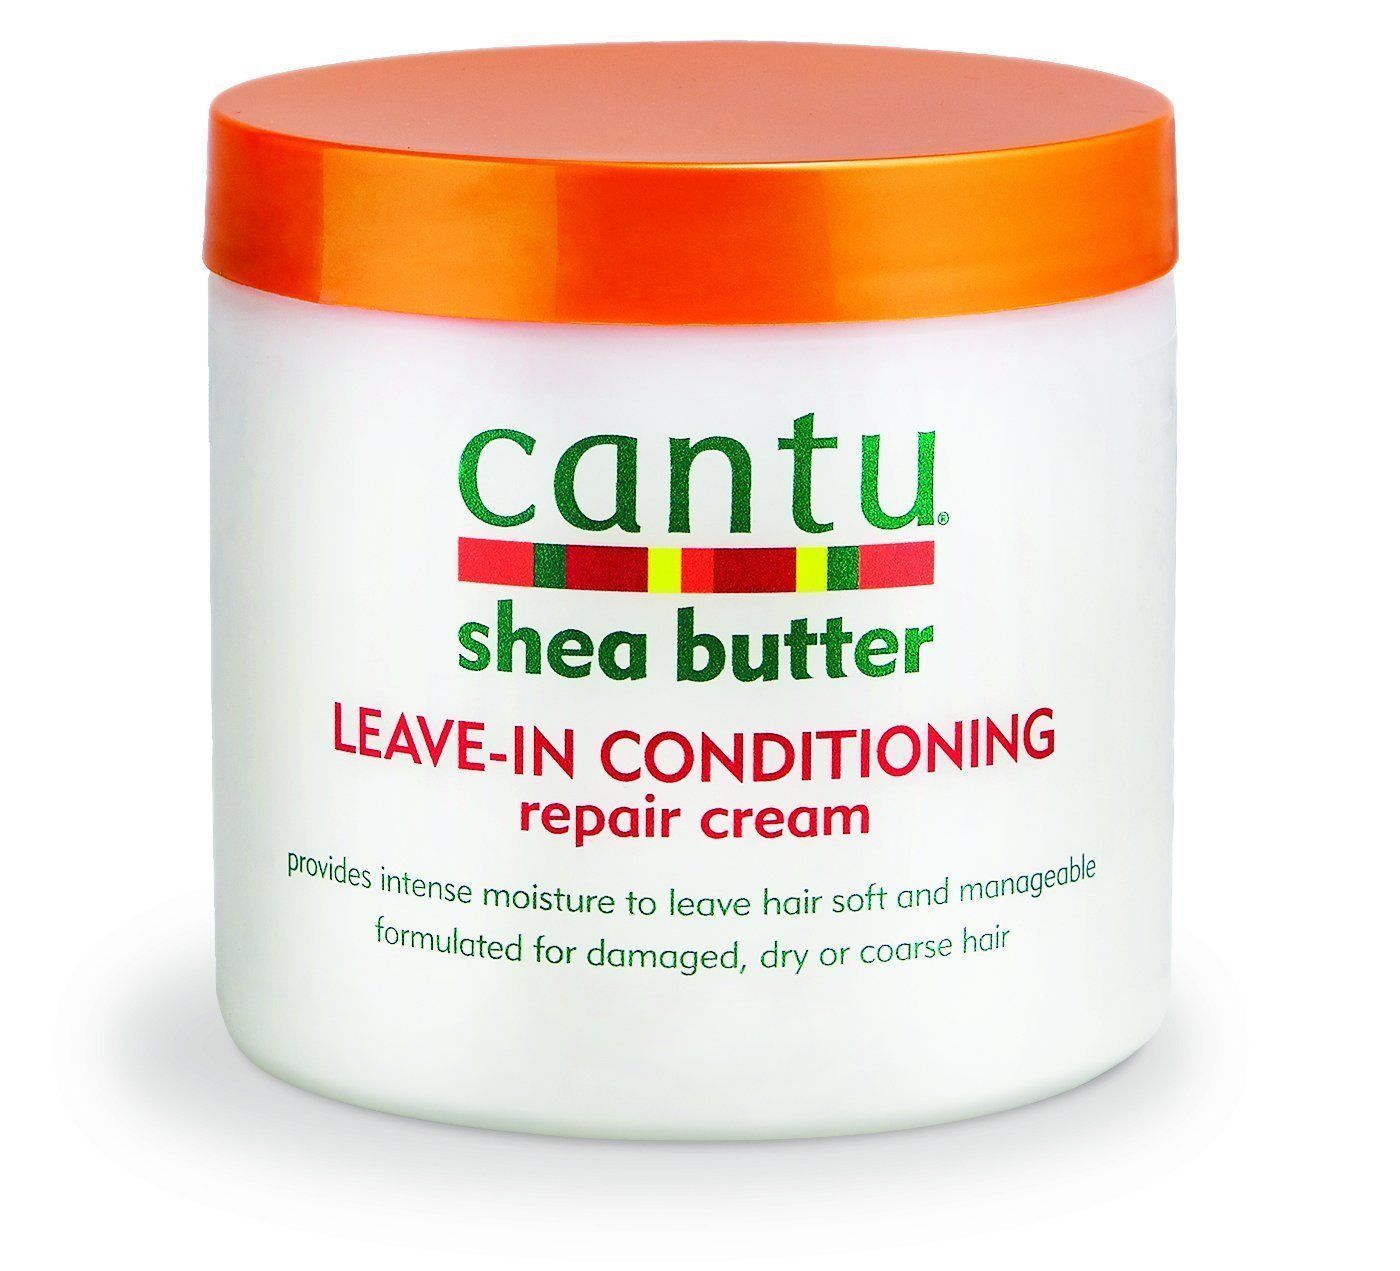 Cantu Shea Butter Leave in Conditioning Repair Cream 453g